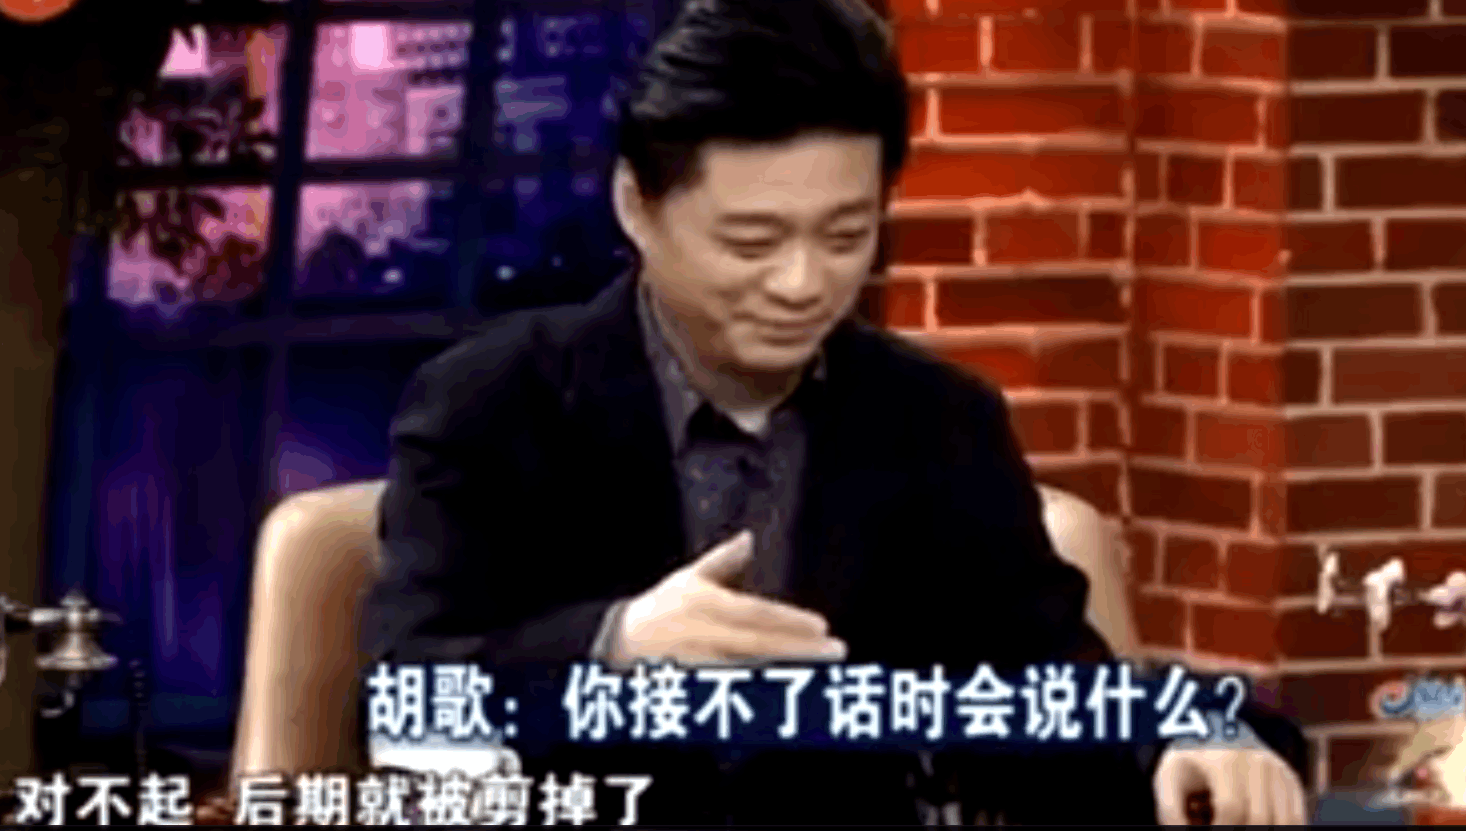 胡歌喊话崔永元:我最最佩服您,让人意想不到的崔永元这样回答!图